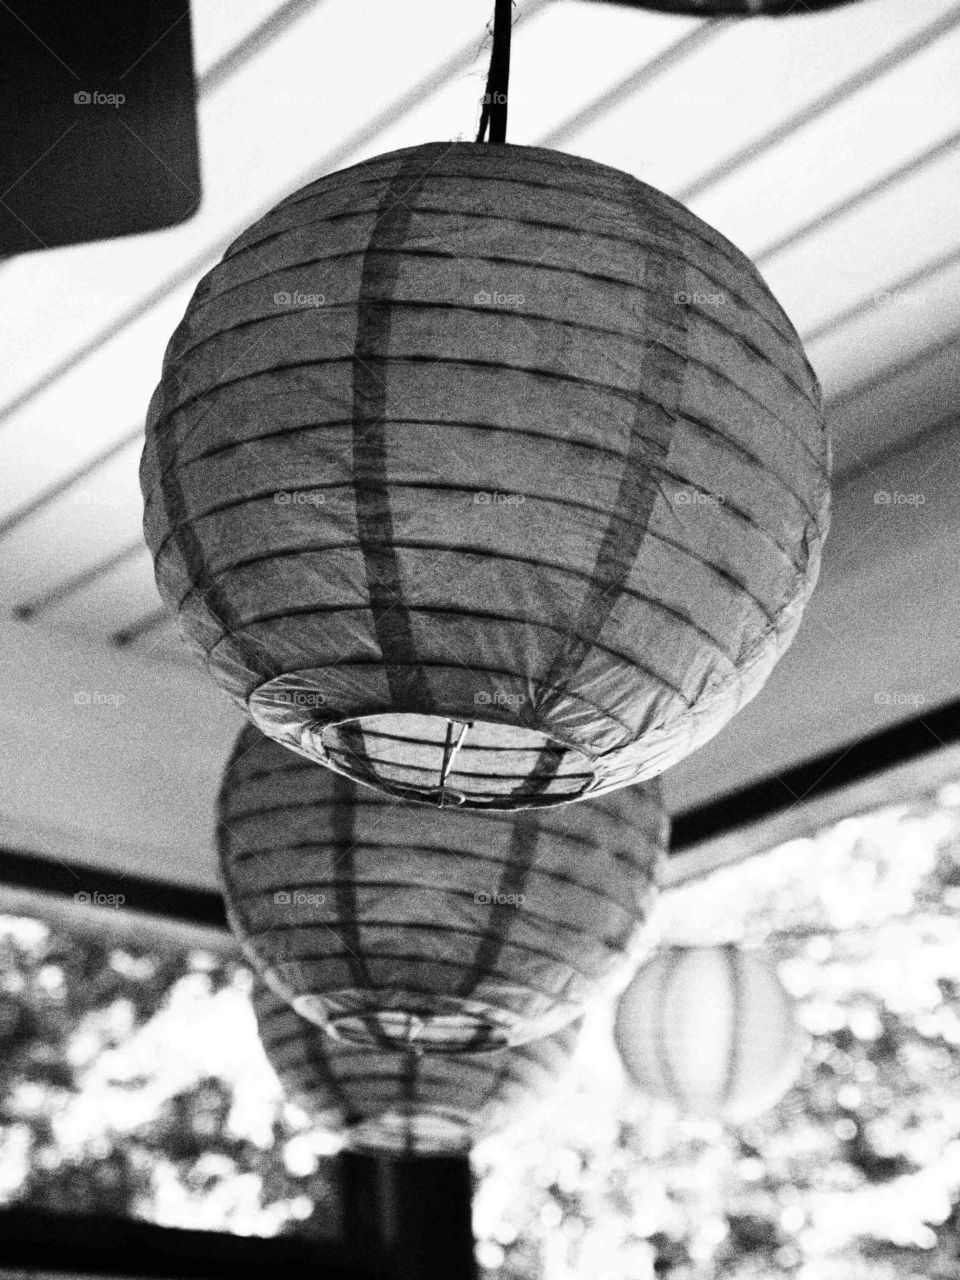 Paper Lanterns